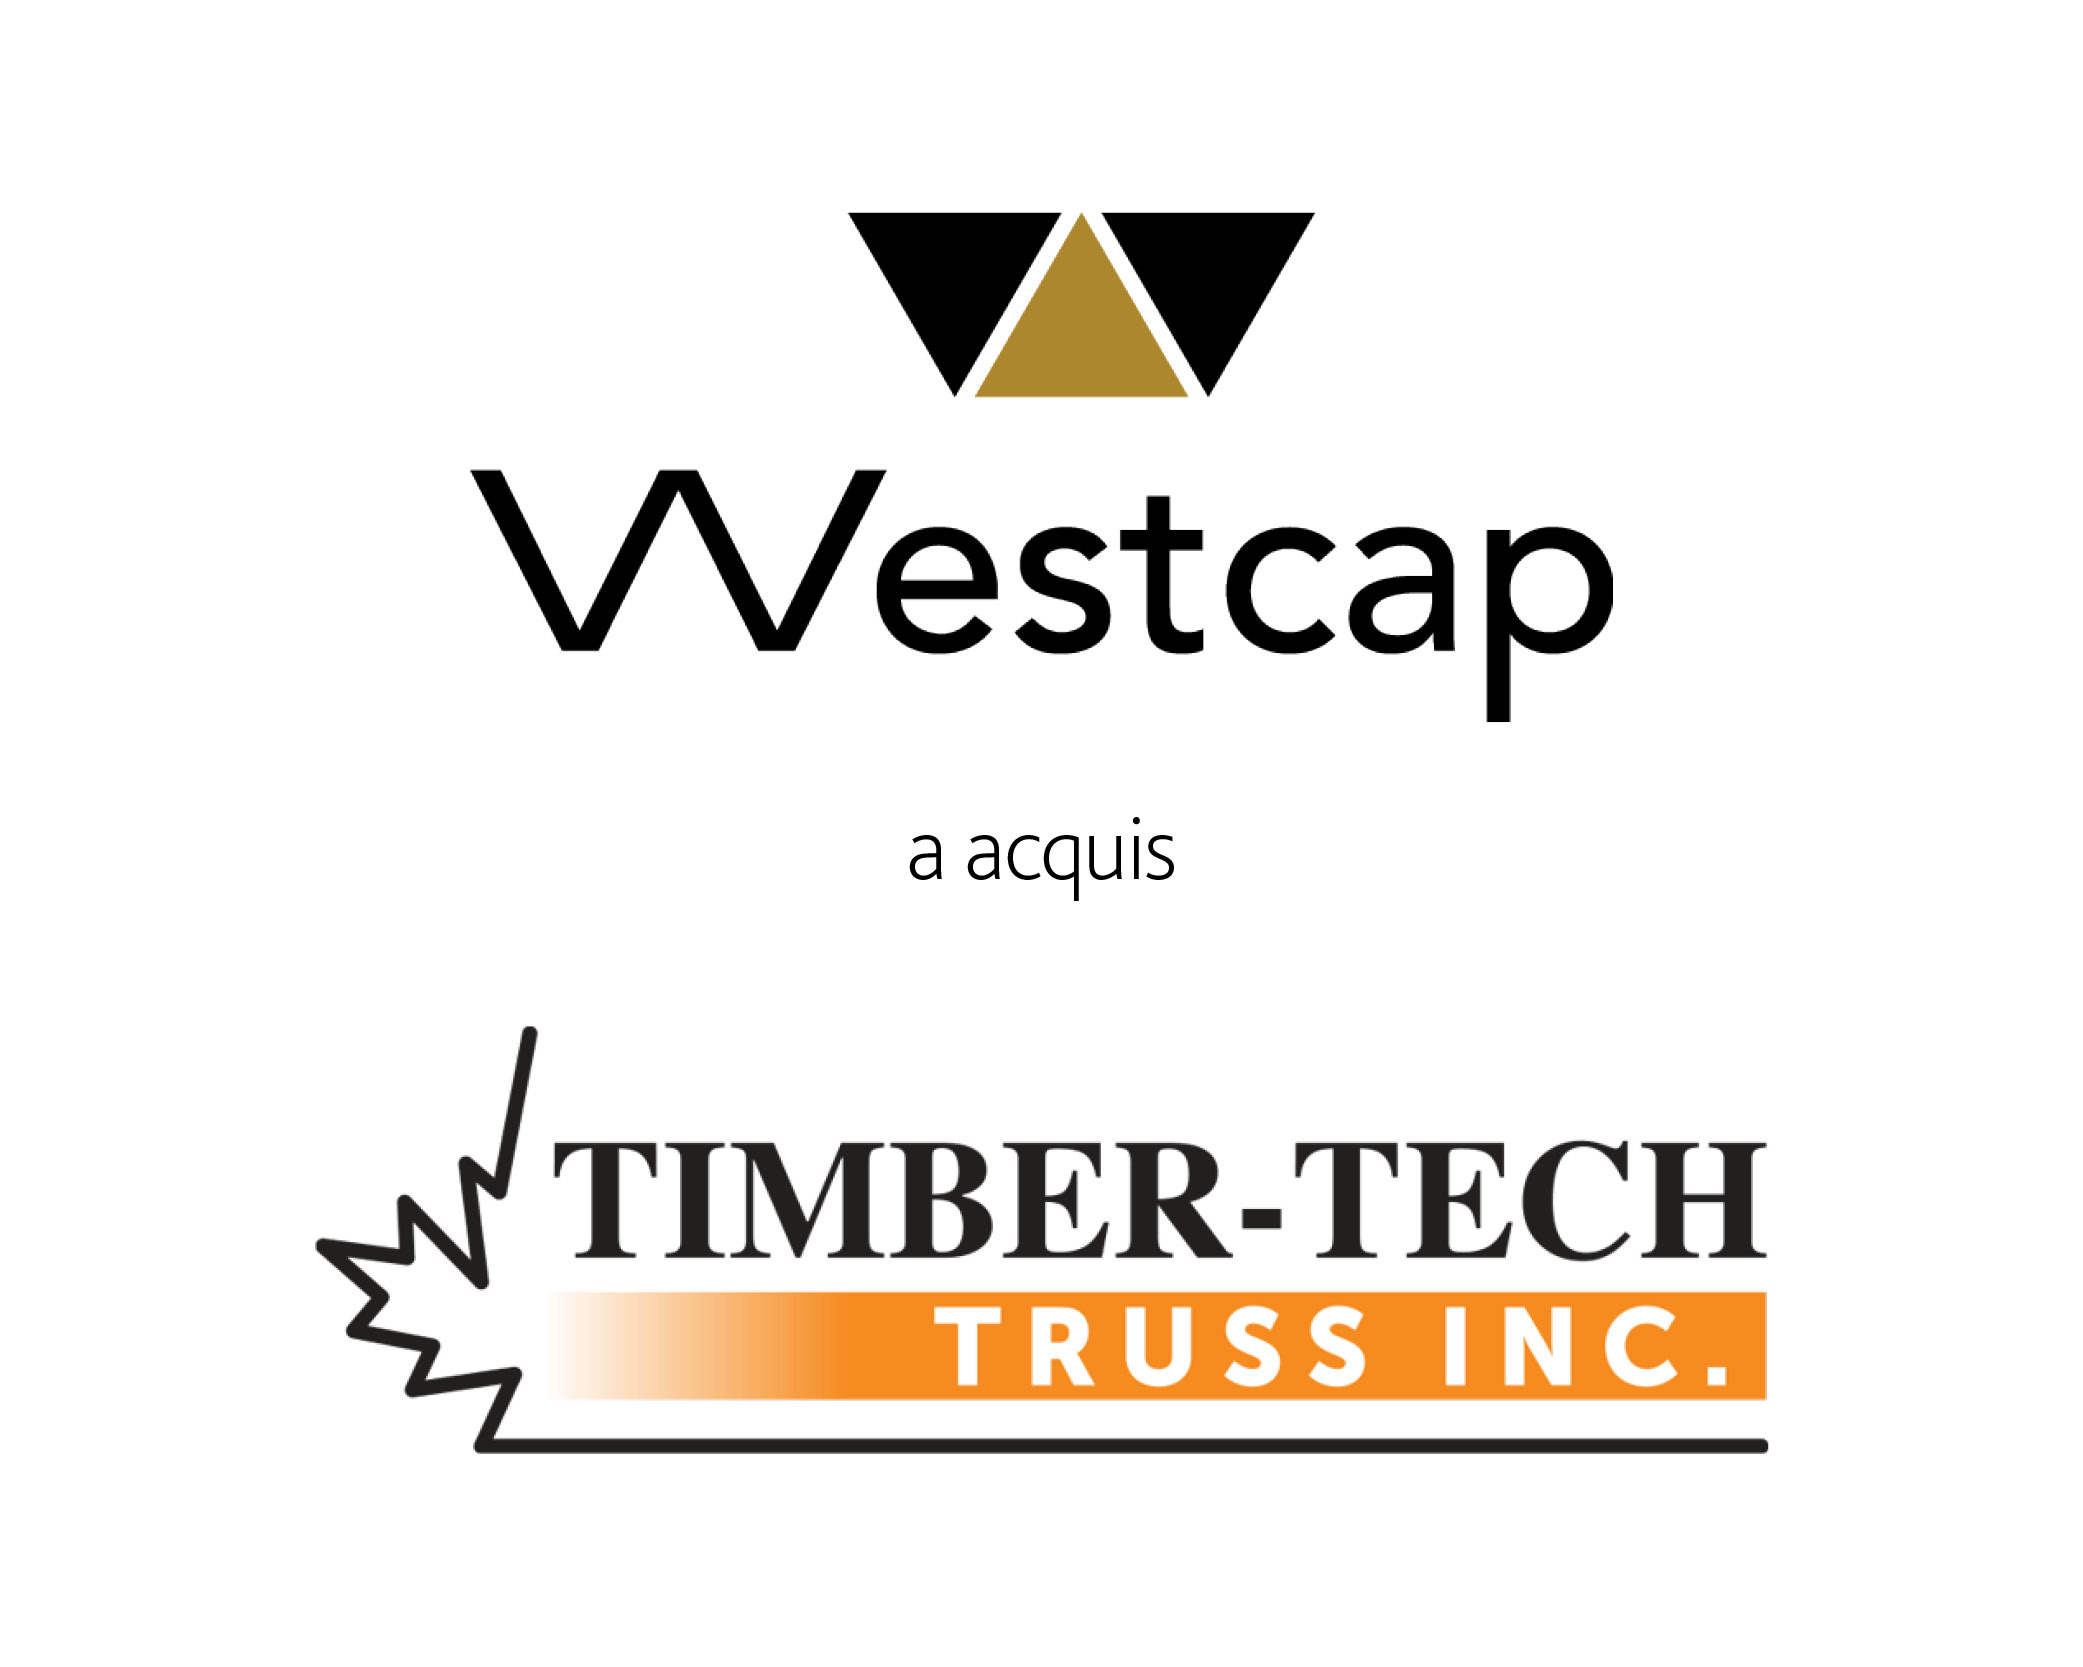 Westcap acquiert Timbertech Trust Inc." - Un logo de Westcap, une société financière, avec le texte "Timbertech Trust Inc." en dessous.